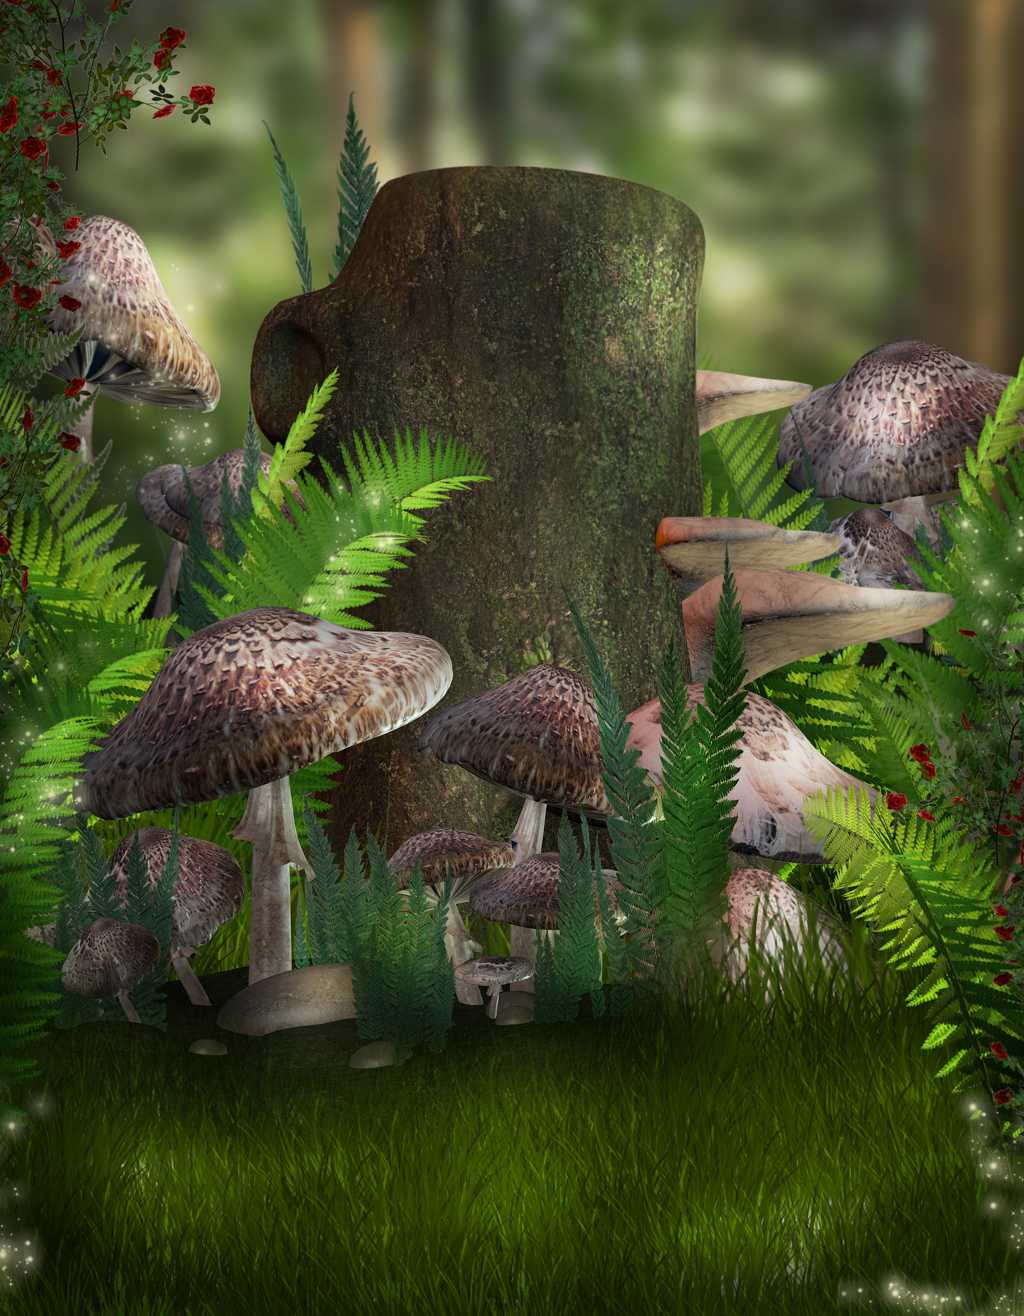 野生菌类蘑菇壁纸_风景_太平洋科技